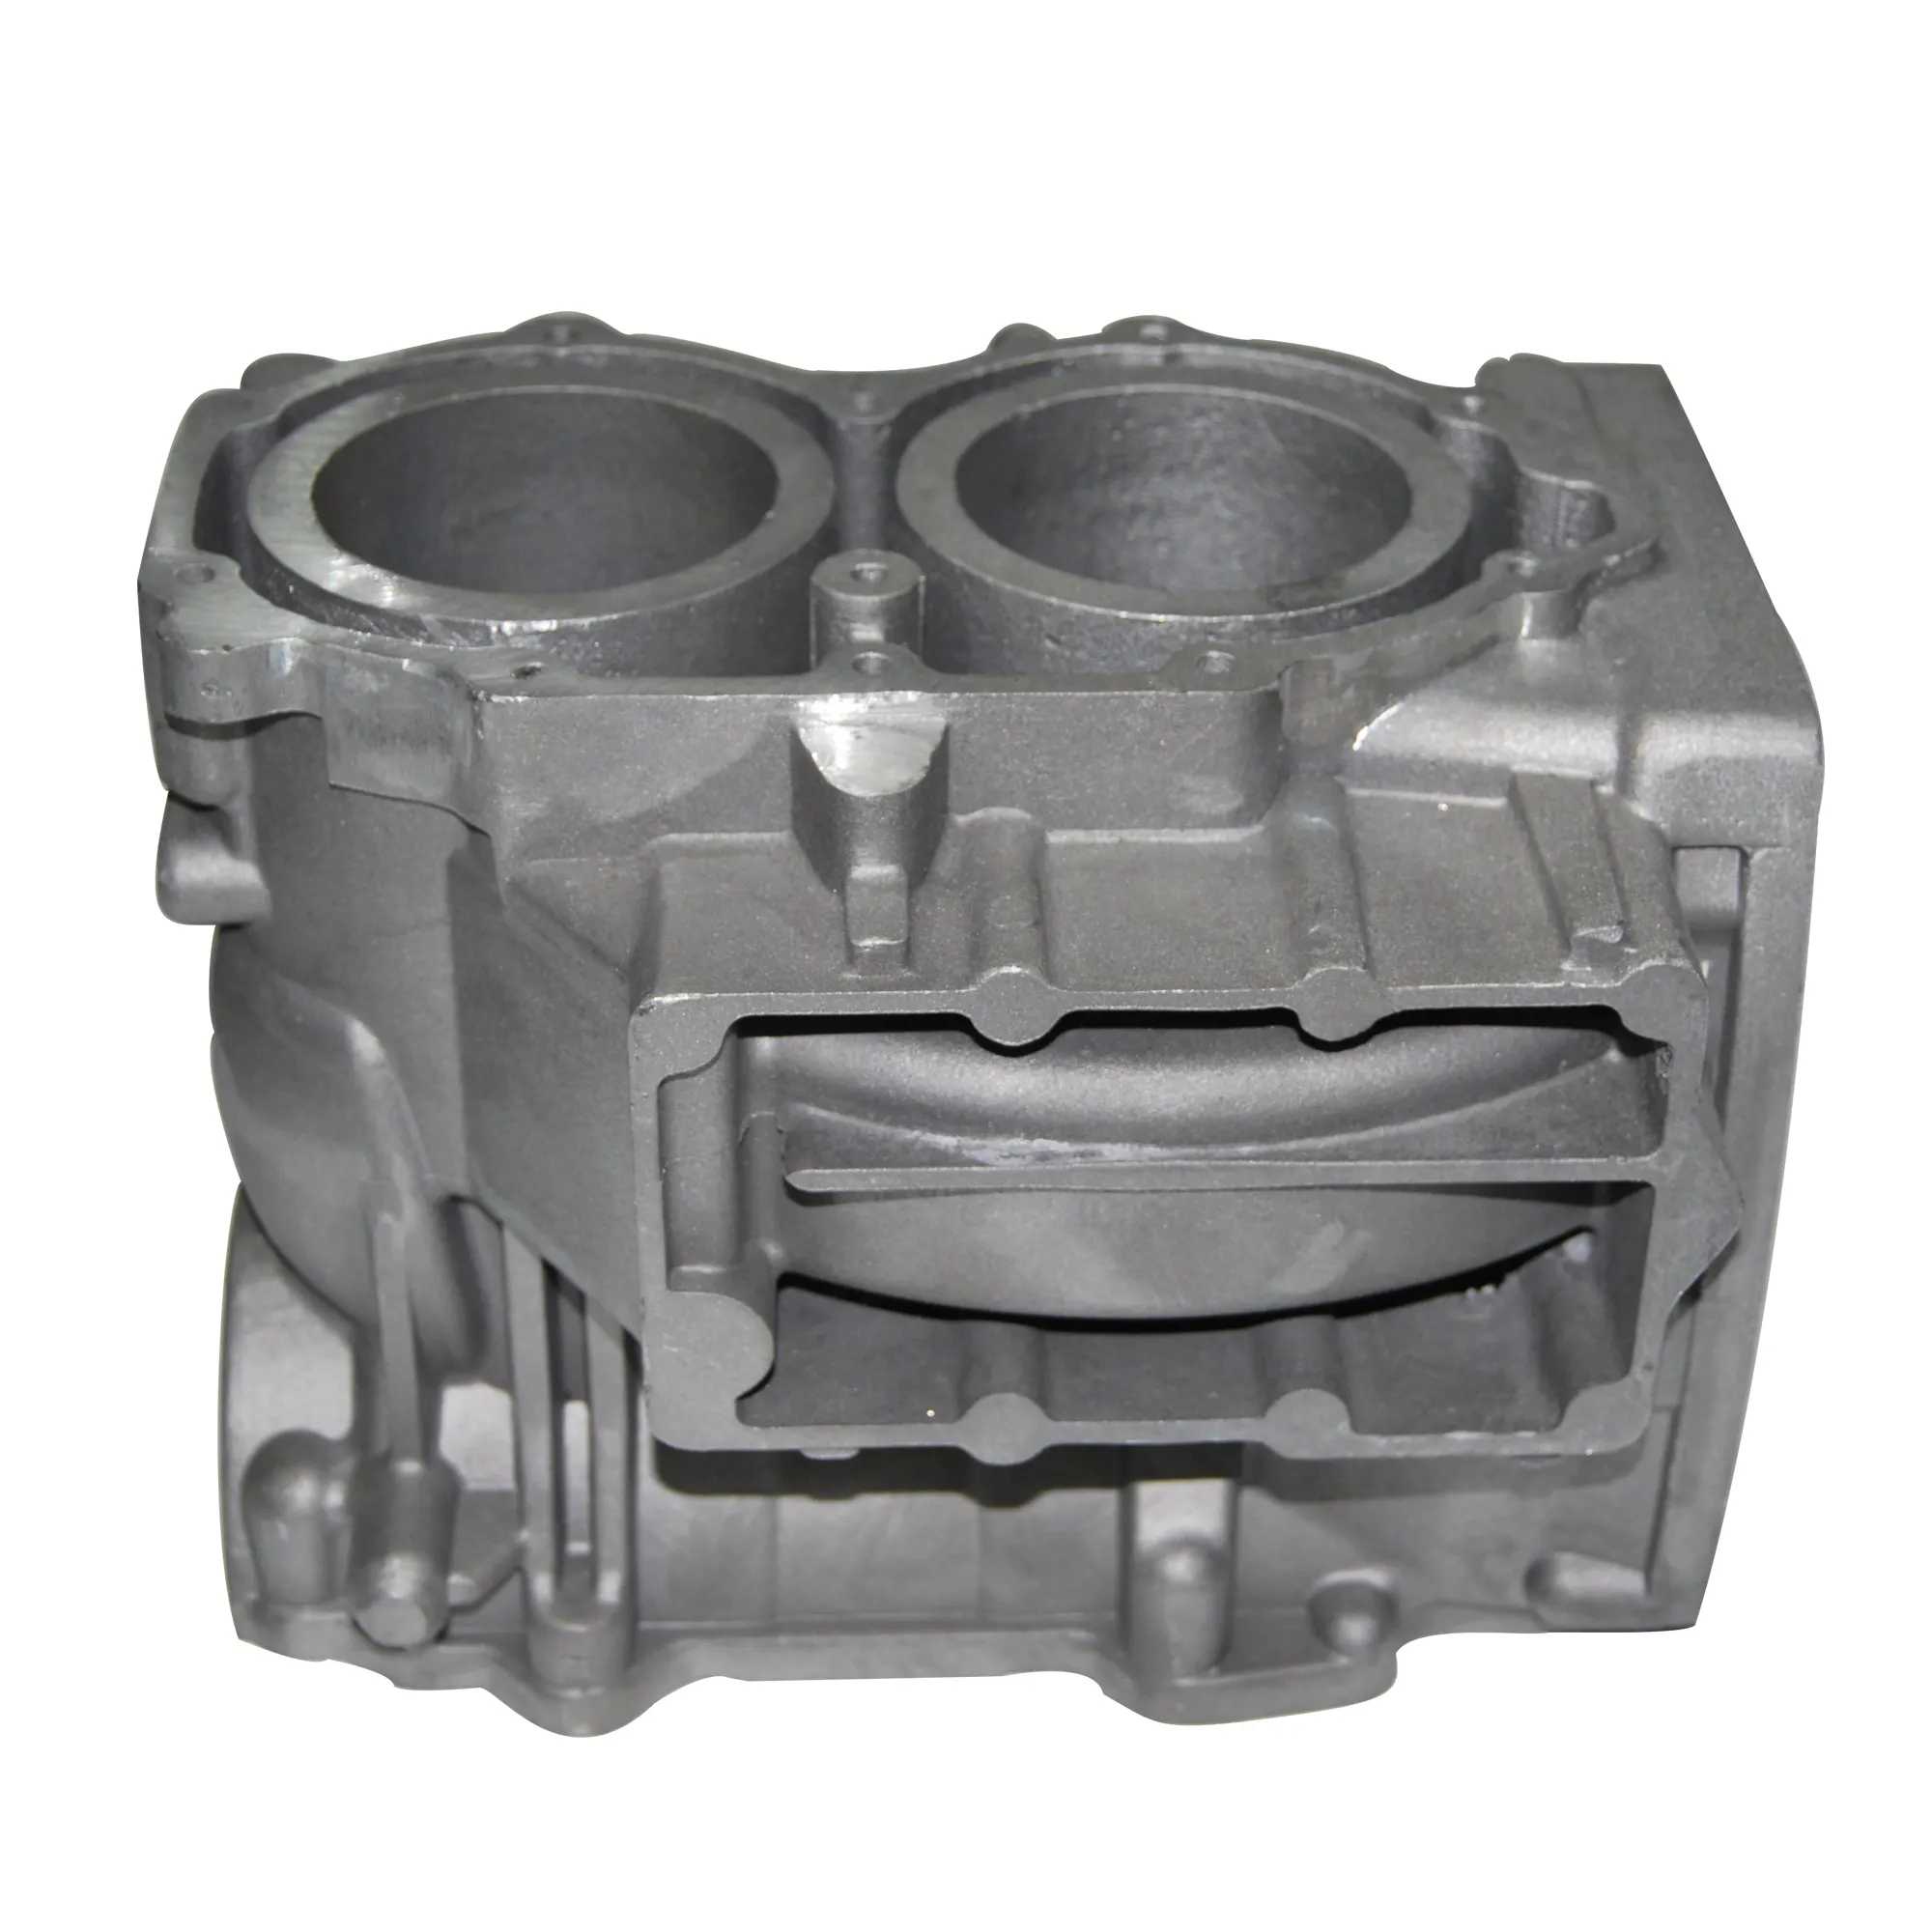 Blocco motore per motocicli in fusione di alluminio personalizzato della fabbrica di Shanghai Matech